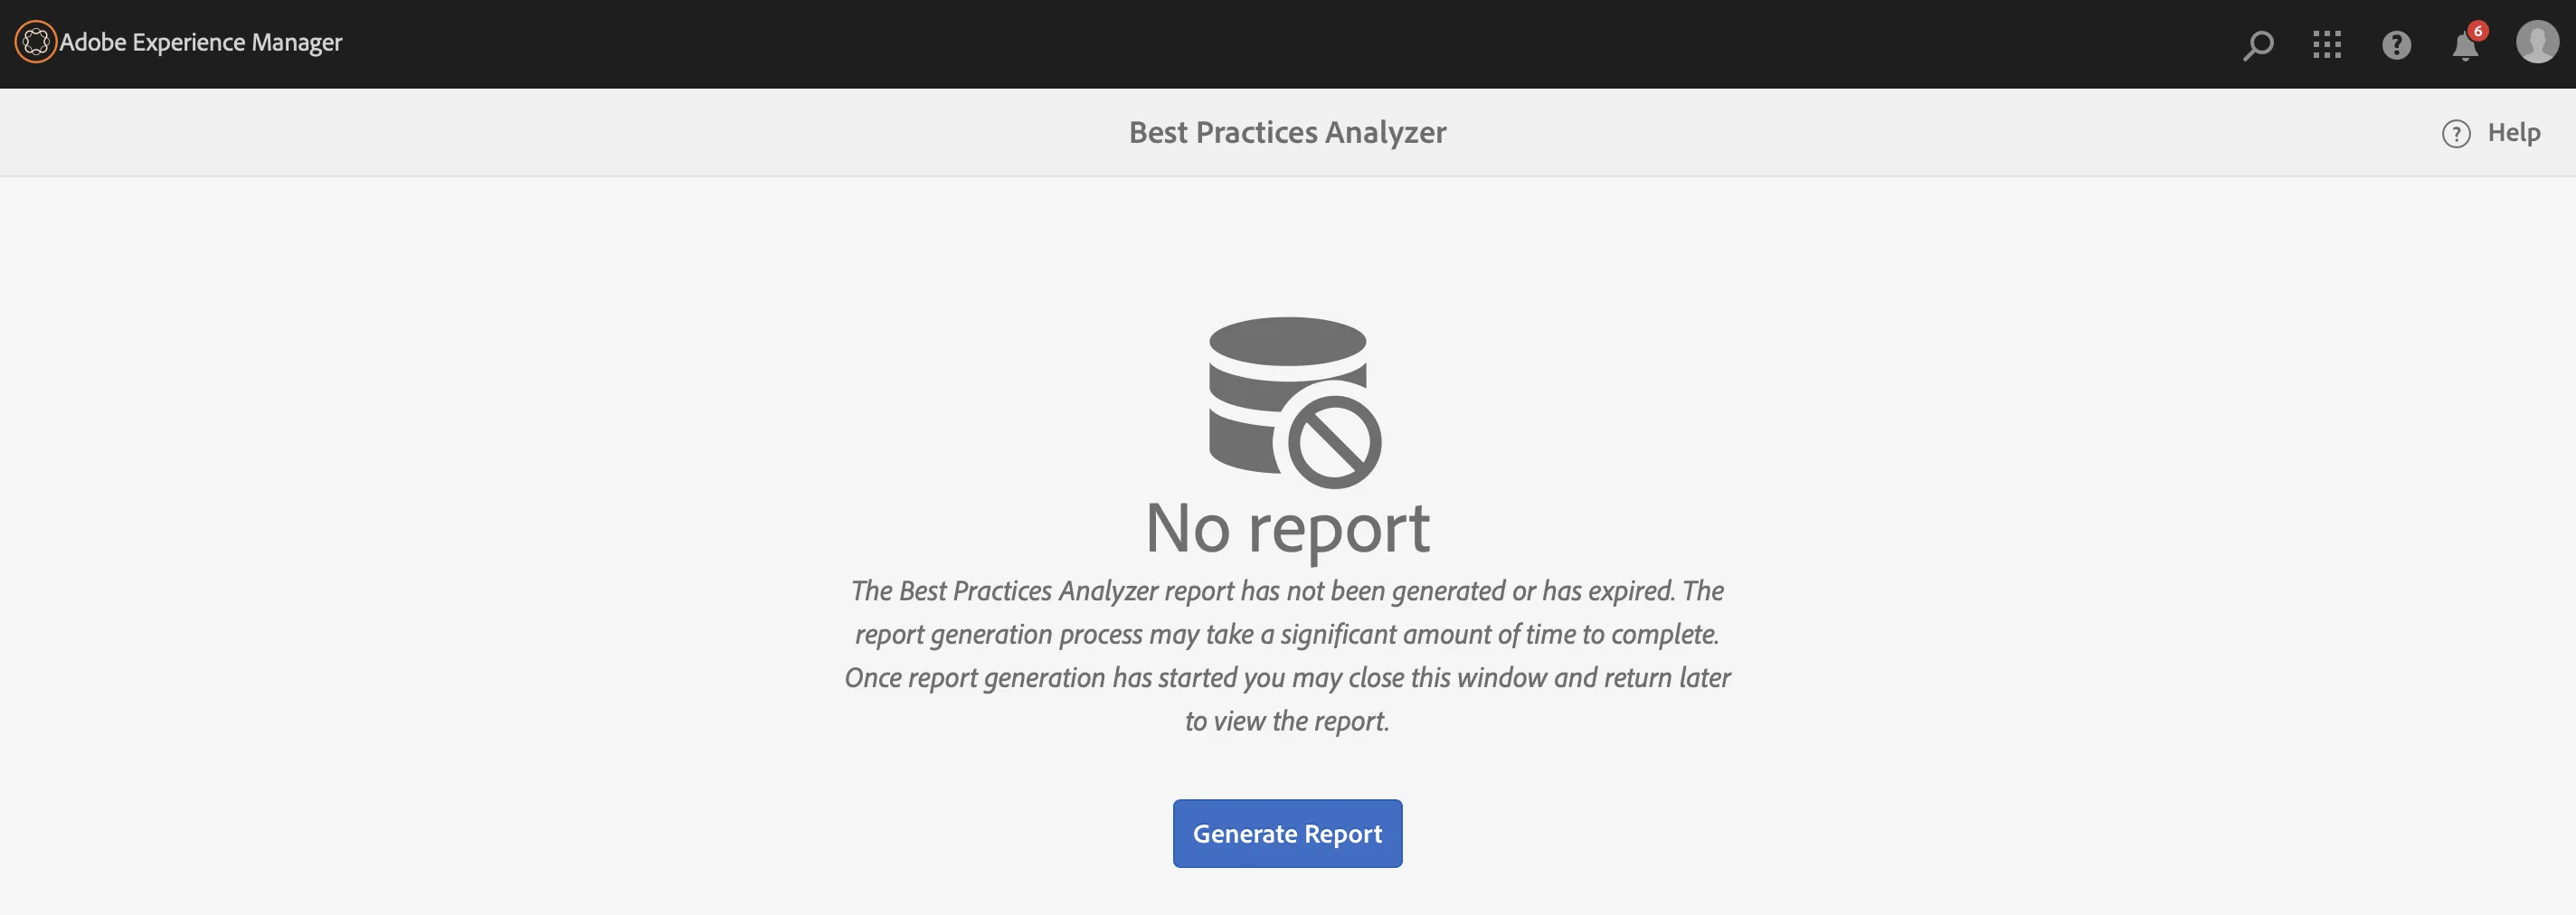 Best Practice Analyzer